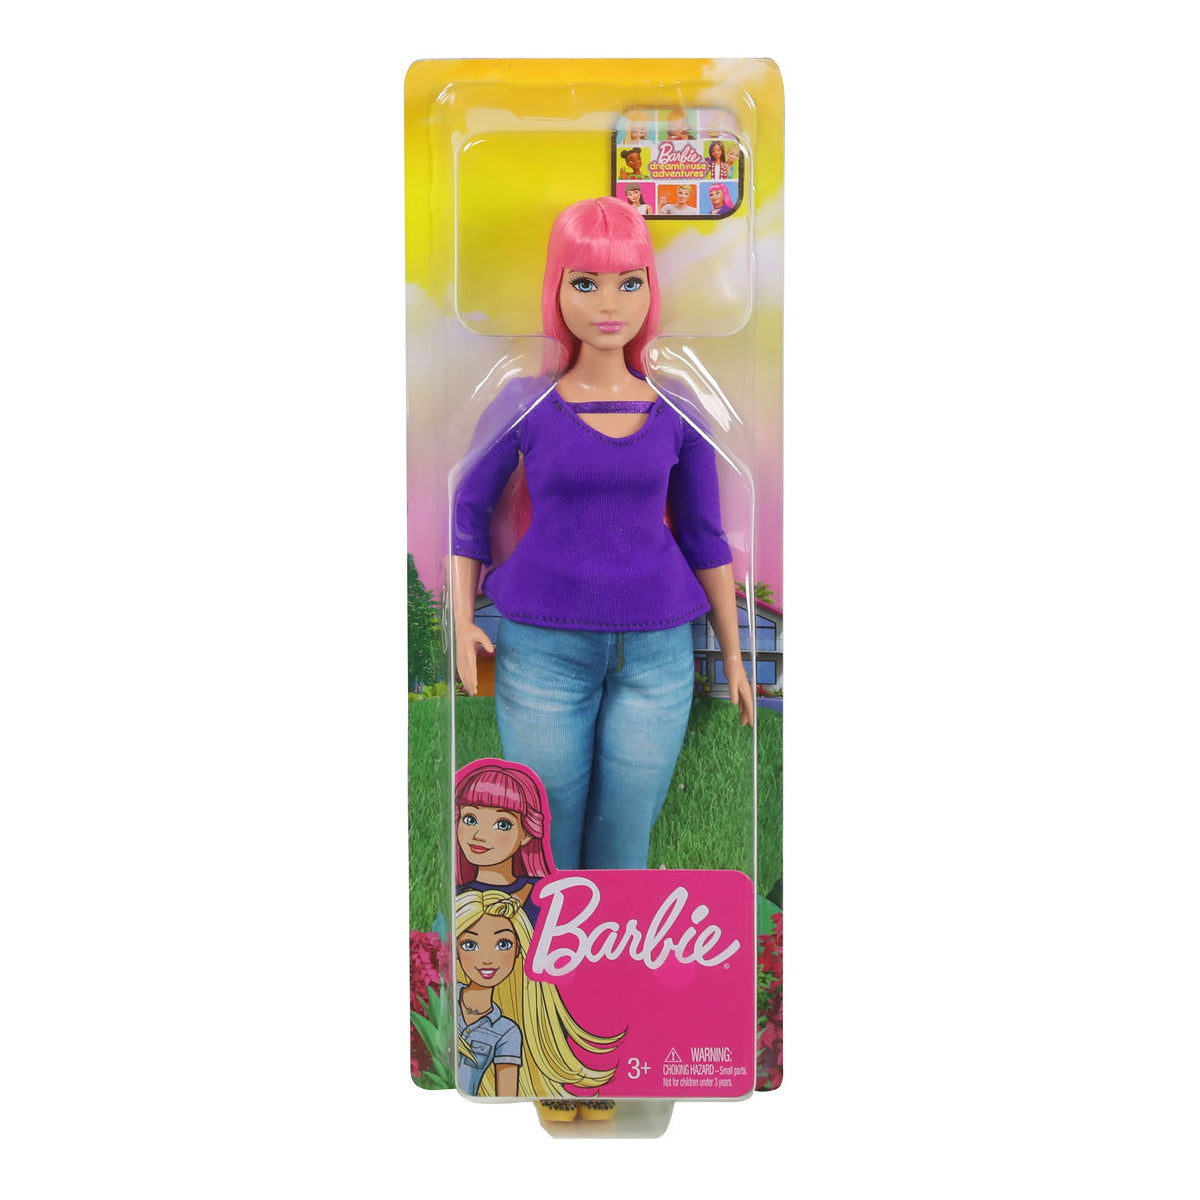 Barbie DreamHouse Adventures Daisy Doll